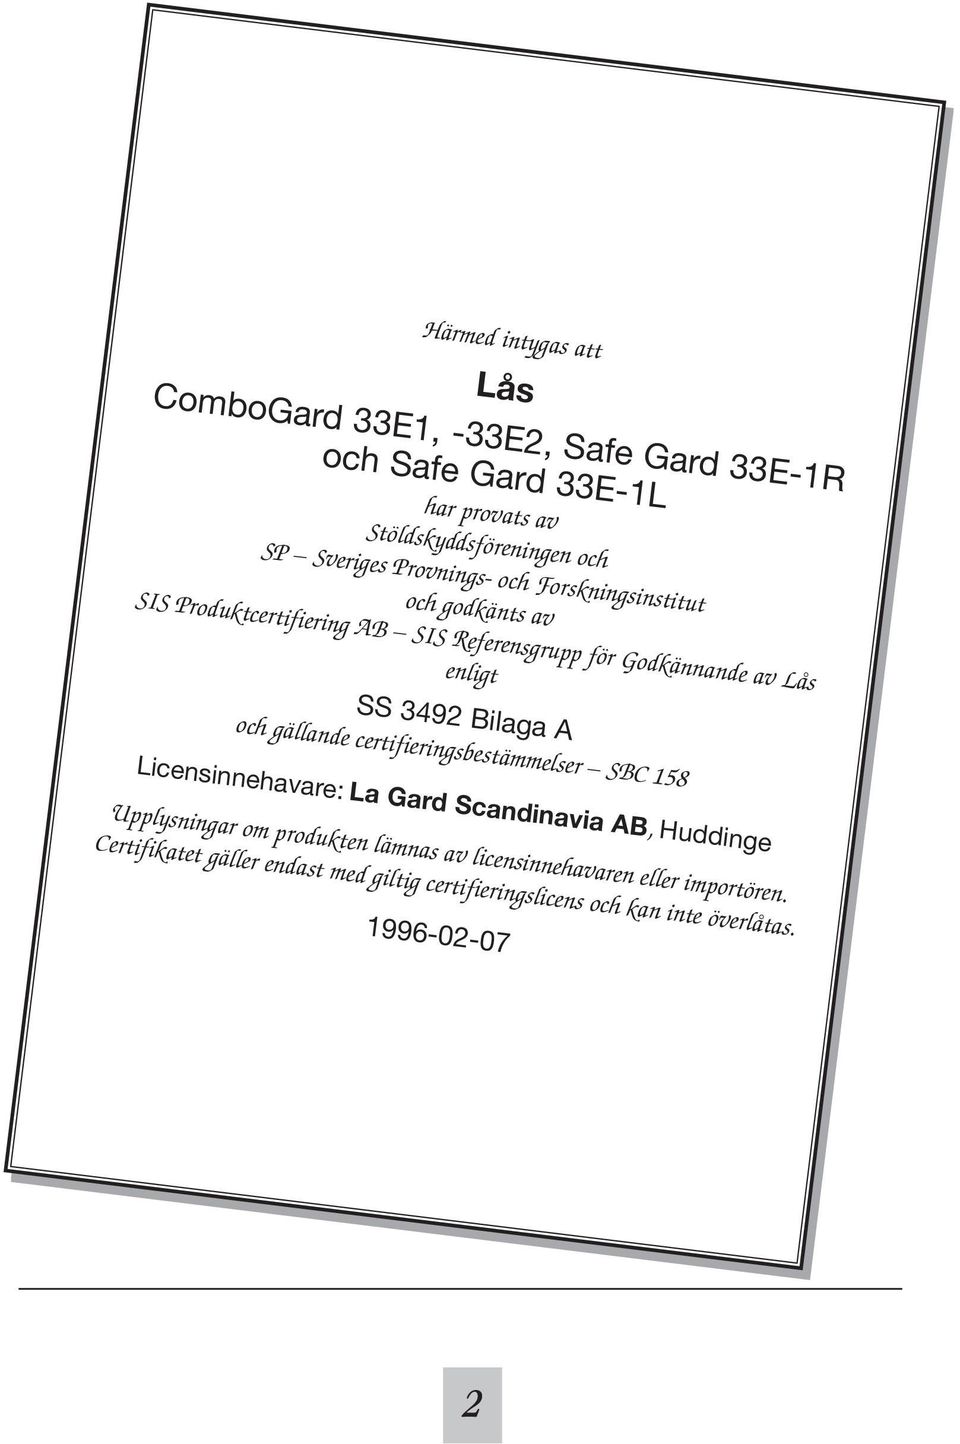 SS 3492 Bilaga A och gällande certifieringsbestämmelser SBC 158 Licensinnehavare: La Gard Scandinavia AB, Huddinge Upplysningar om